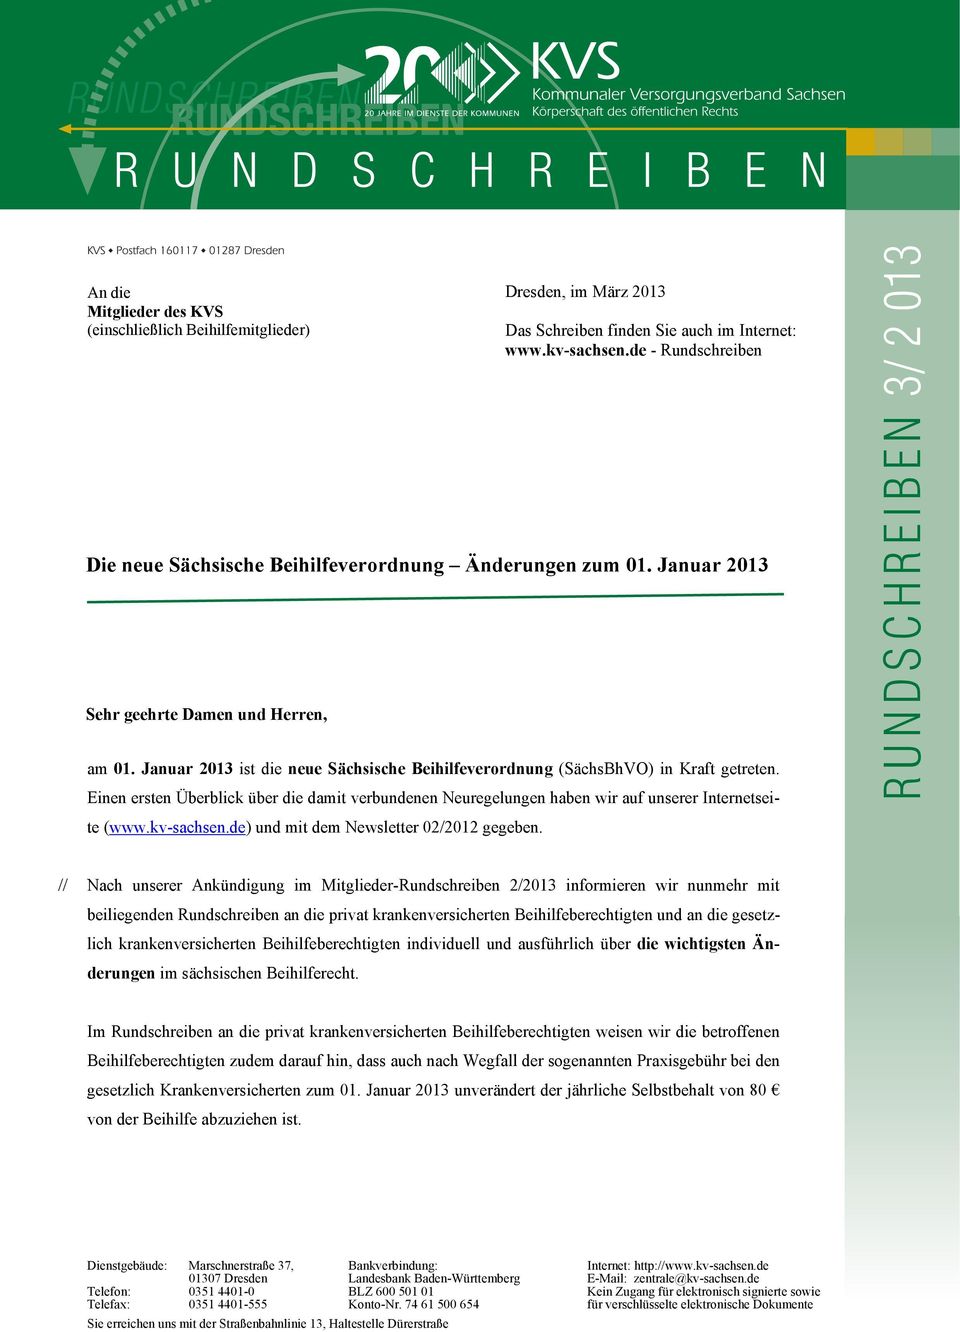 Januar 2013 ist die neue Sächsische Beihilfeverordnung (SächsBhVO) in Kraft getreten. Einen ersten Überblick über die damit verbundenen Neuregelungen haben wir auf unserer Internetseite (www.